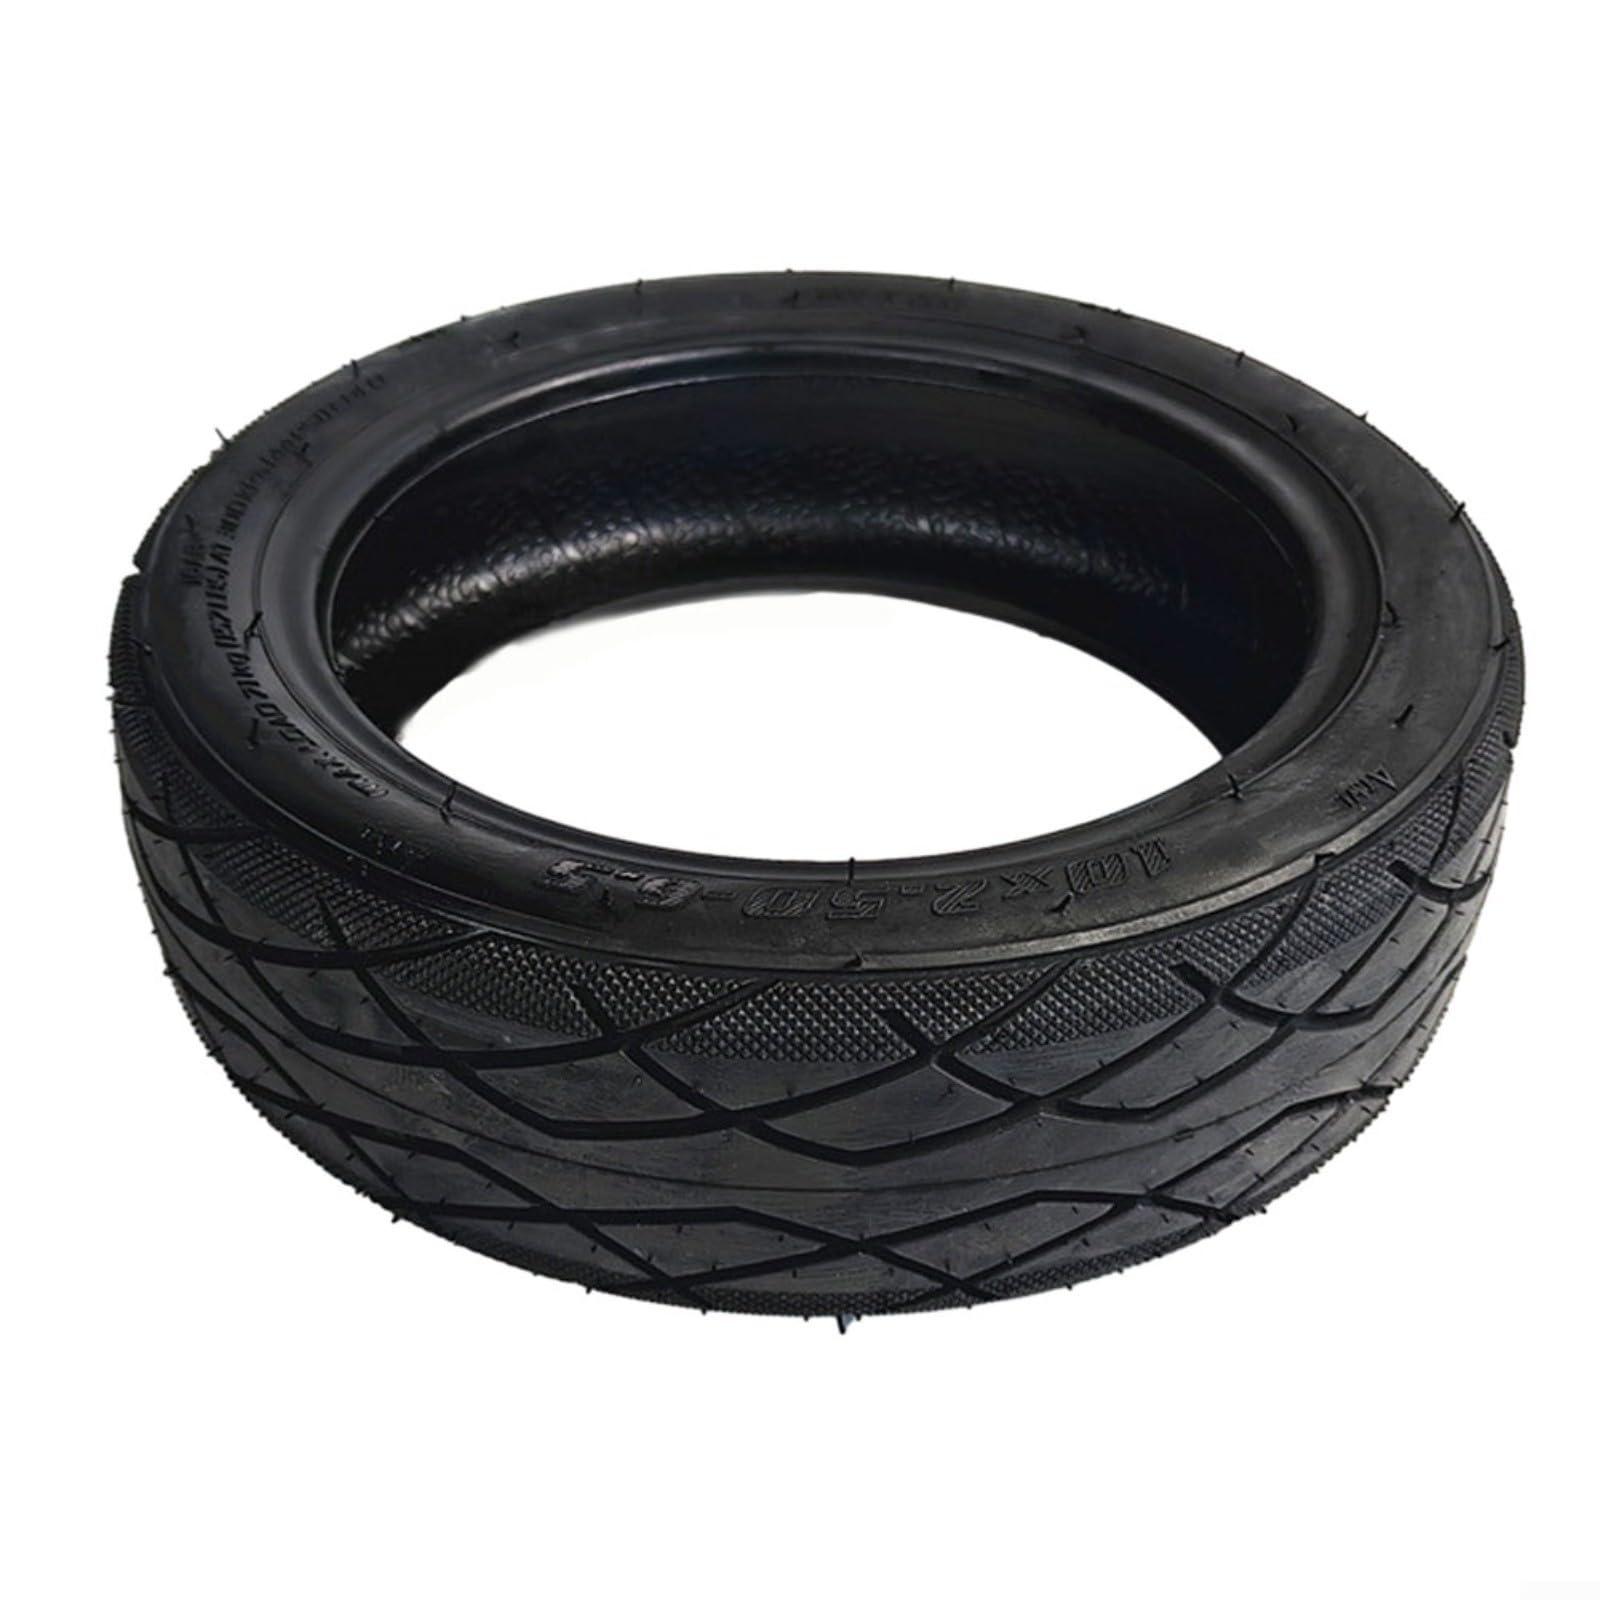 EpheyFIF Schlauchlose Reifen für Ninebot Max G30/G30E/G30LP Elektroroller, Gummi, 10 x 2,50-6,5 Reifenventil, Ersatzteile (nur Reifen), TAKN65R47EQXI8DEJZ617258Q3 von EpheyFIF